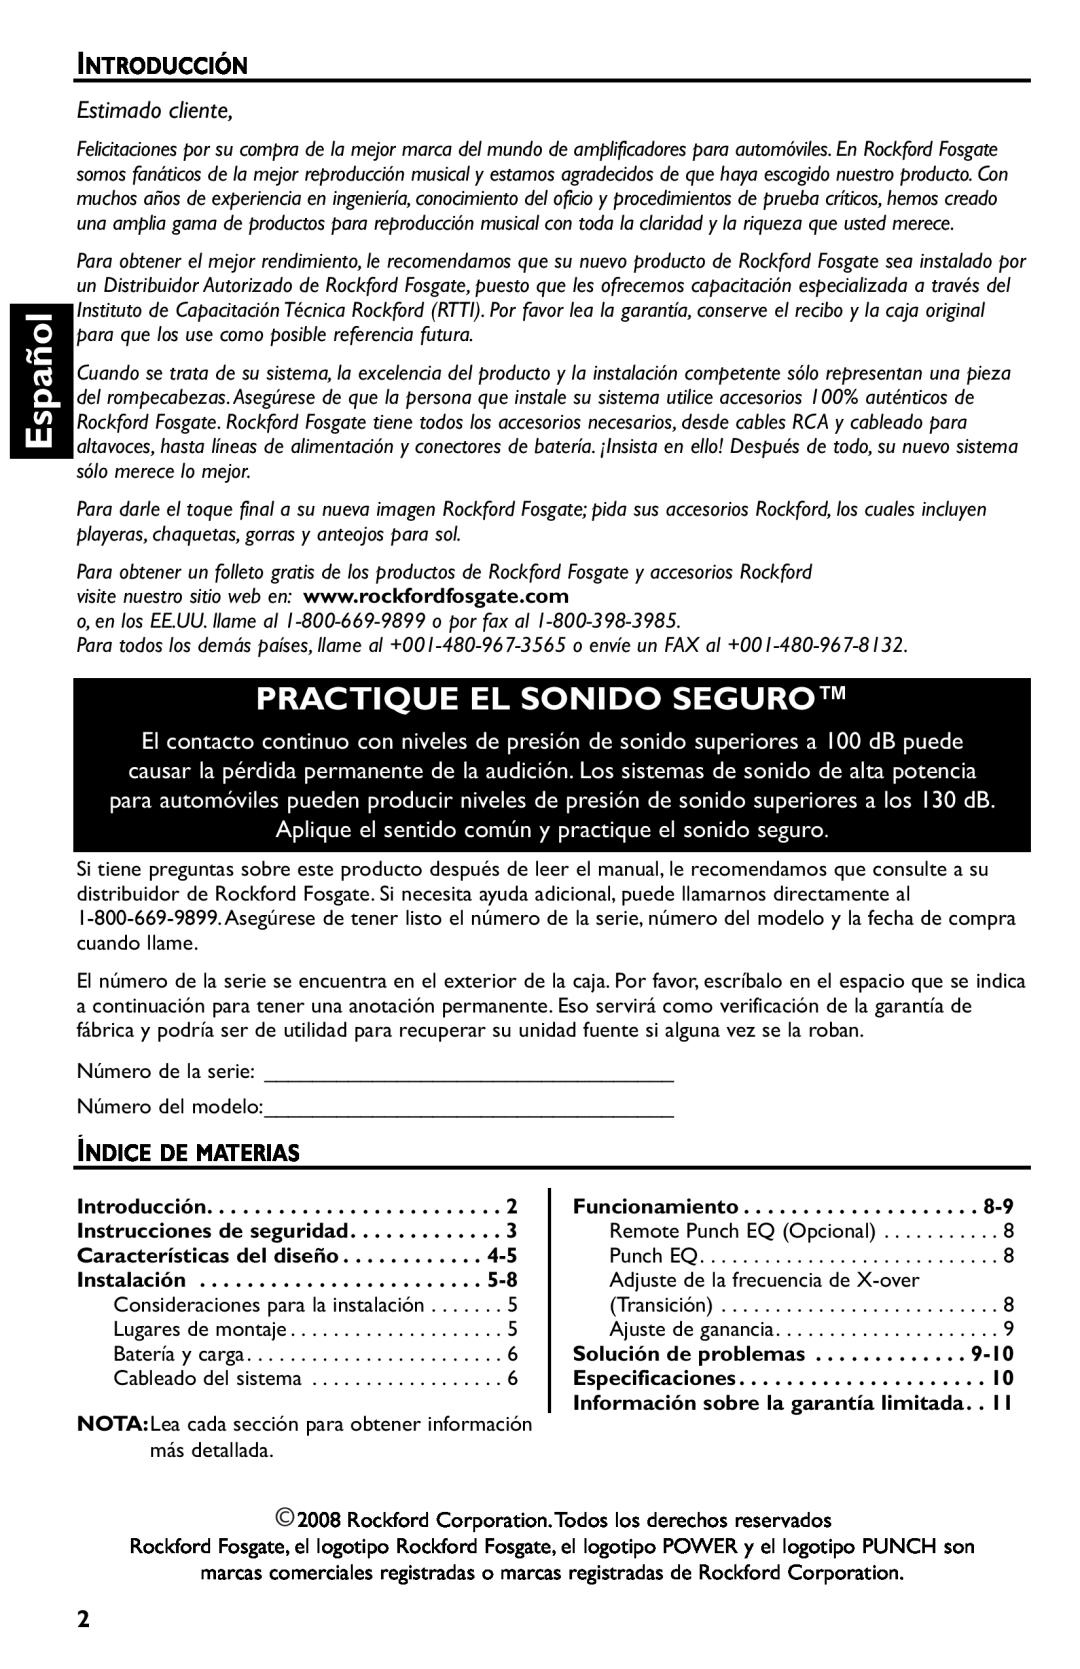 Rockford Fosgate p3002 manual Español, Practique El Sonido Seguro, Introducción, Estimado cliente, Índice De Materias 